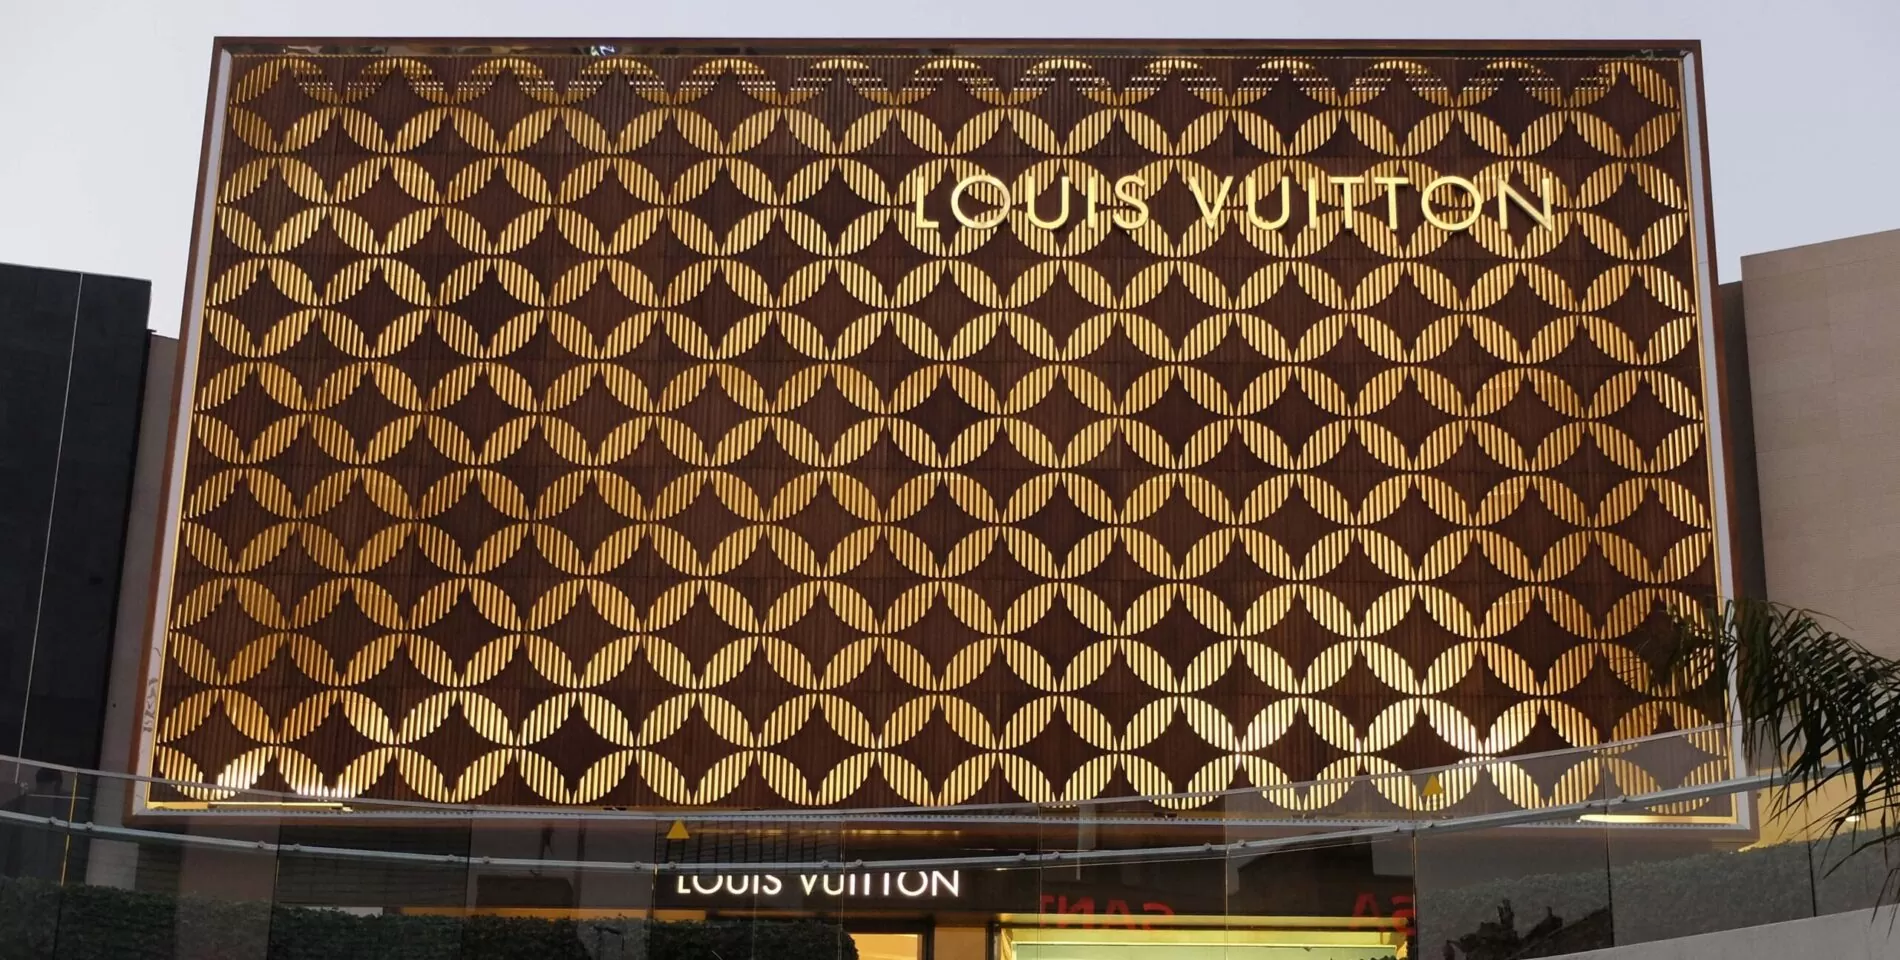 Louis Vuitton Cancun Mexico Shopping Vlog 